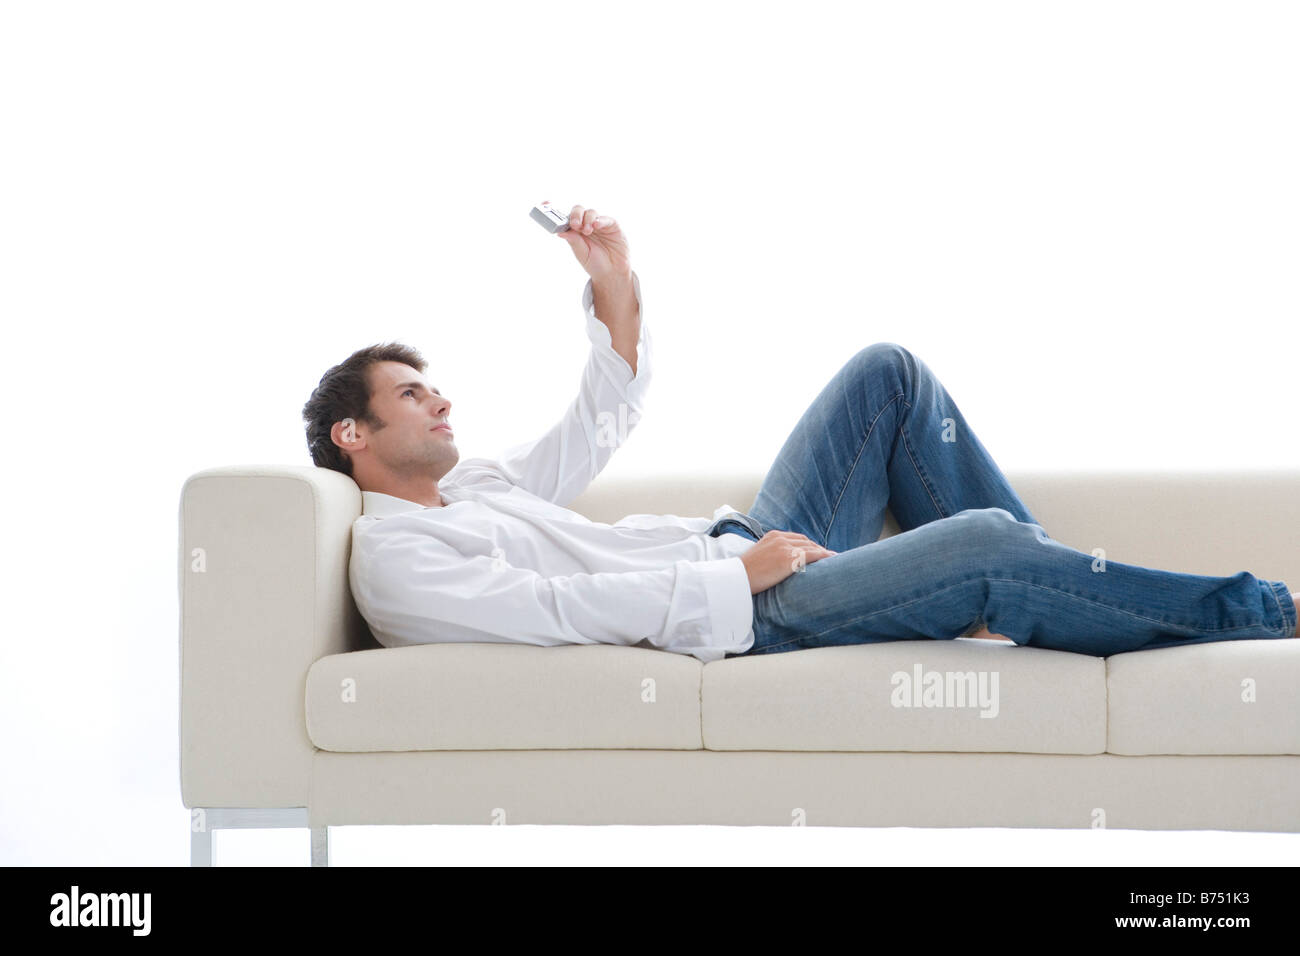 L'un mid adult man lying on sofa photographing lui-même avec l'appareil photo Banque D'Images